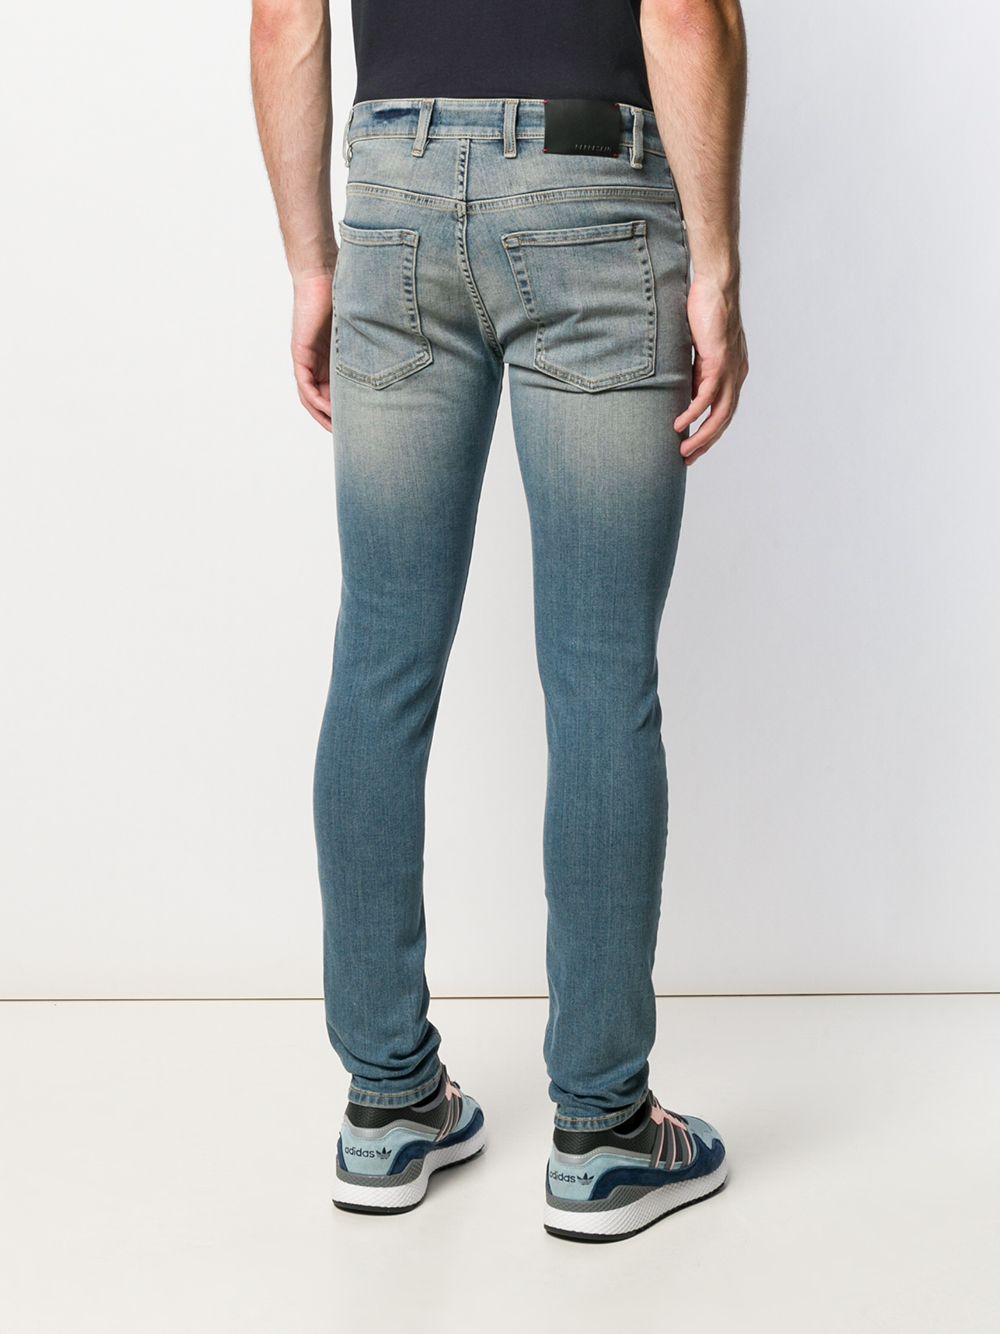 фото Represent джинсы скинни с эффектом потертости